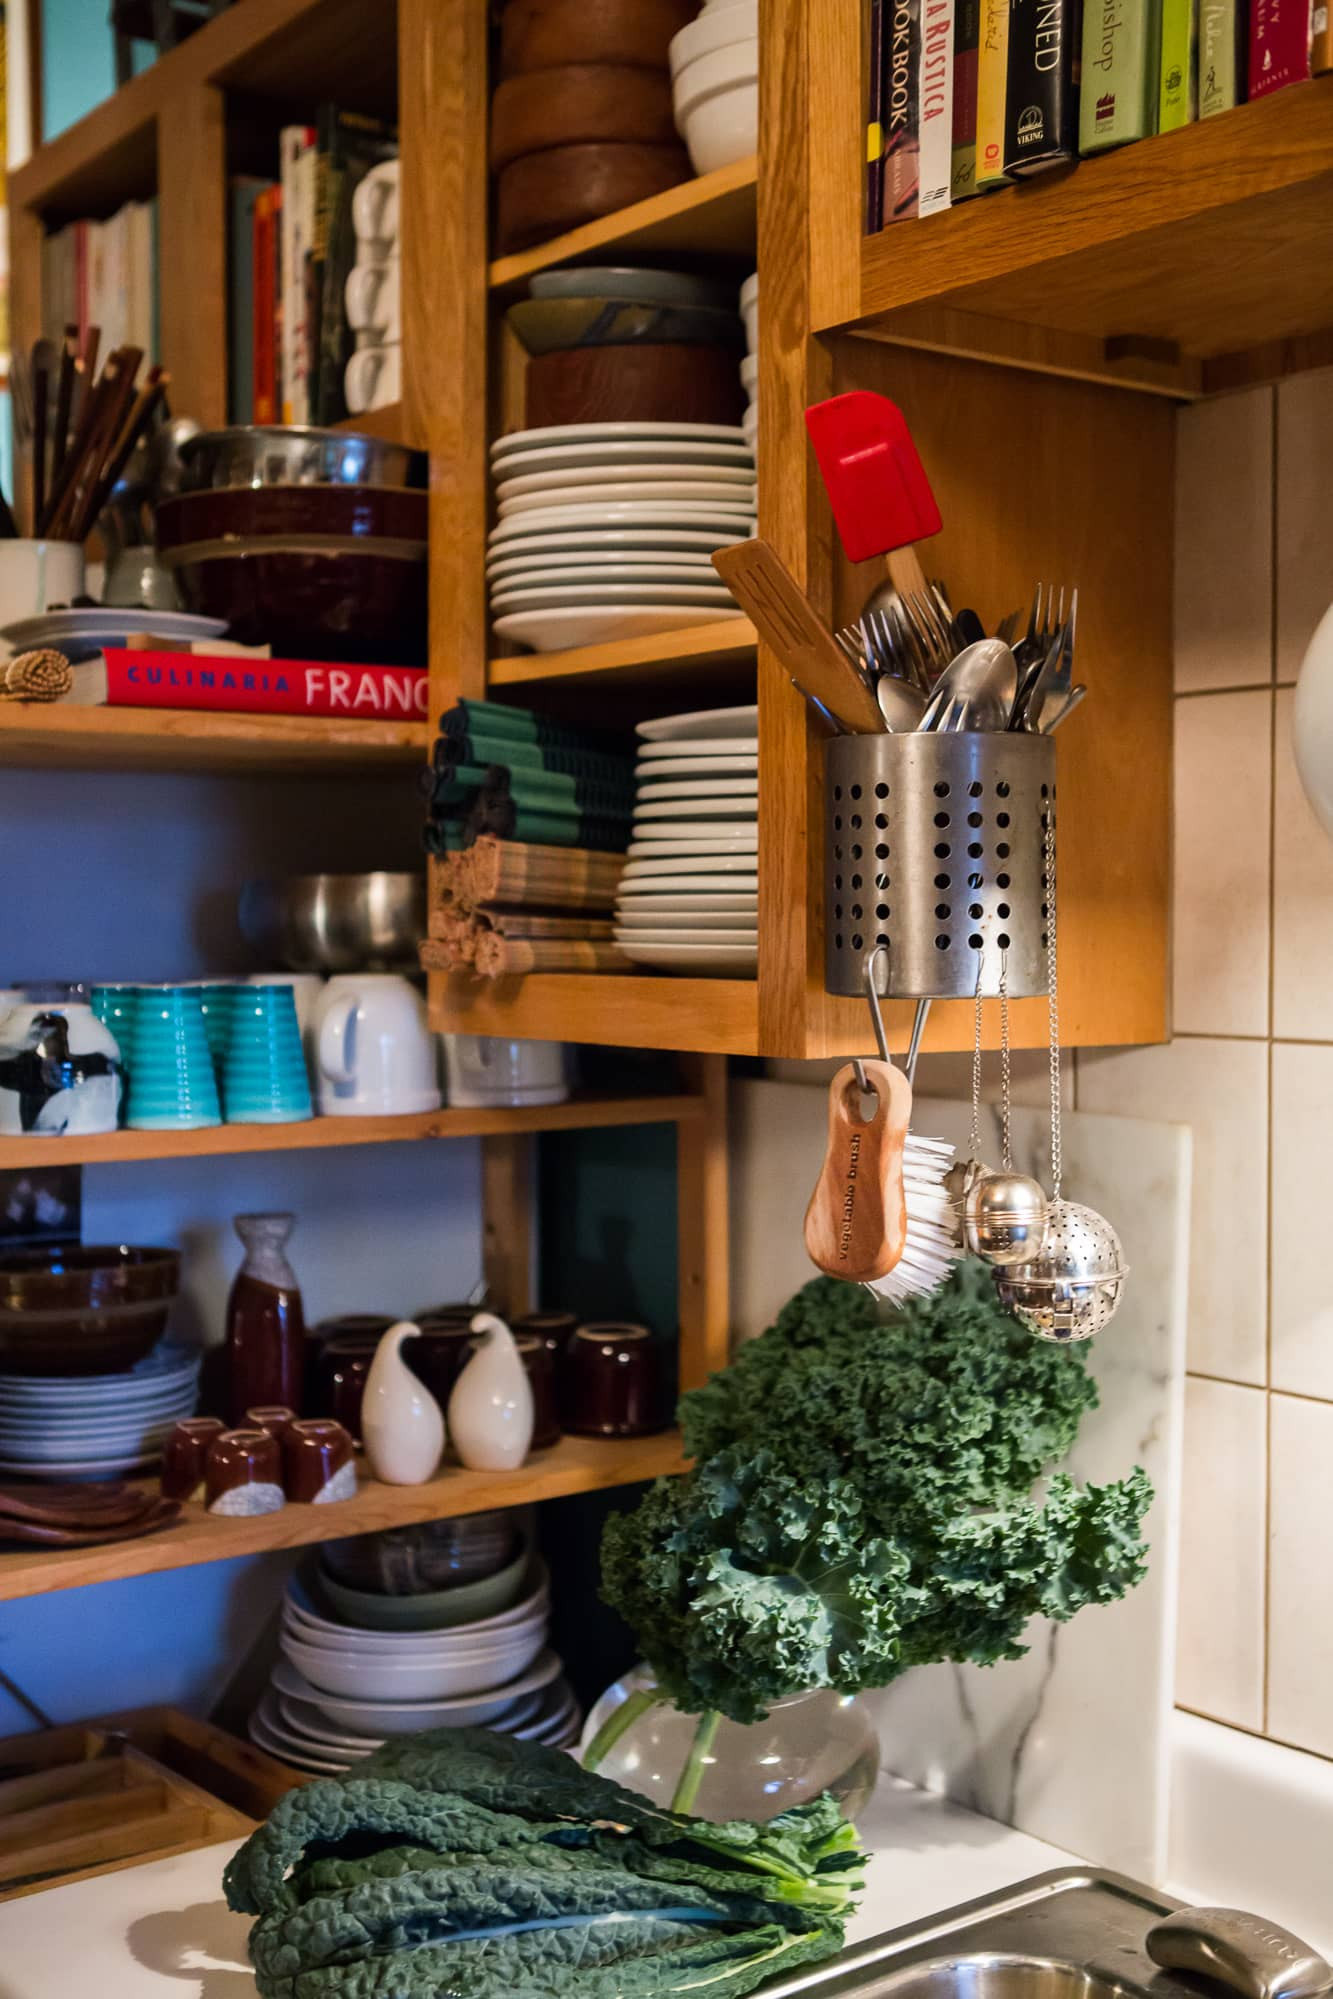 Kitchen Utensil Storage Ideas
 Smart Storage Ideas for Kitchen Utensils 15 Examples From